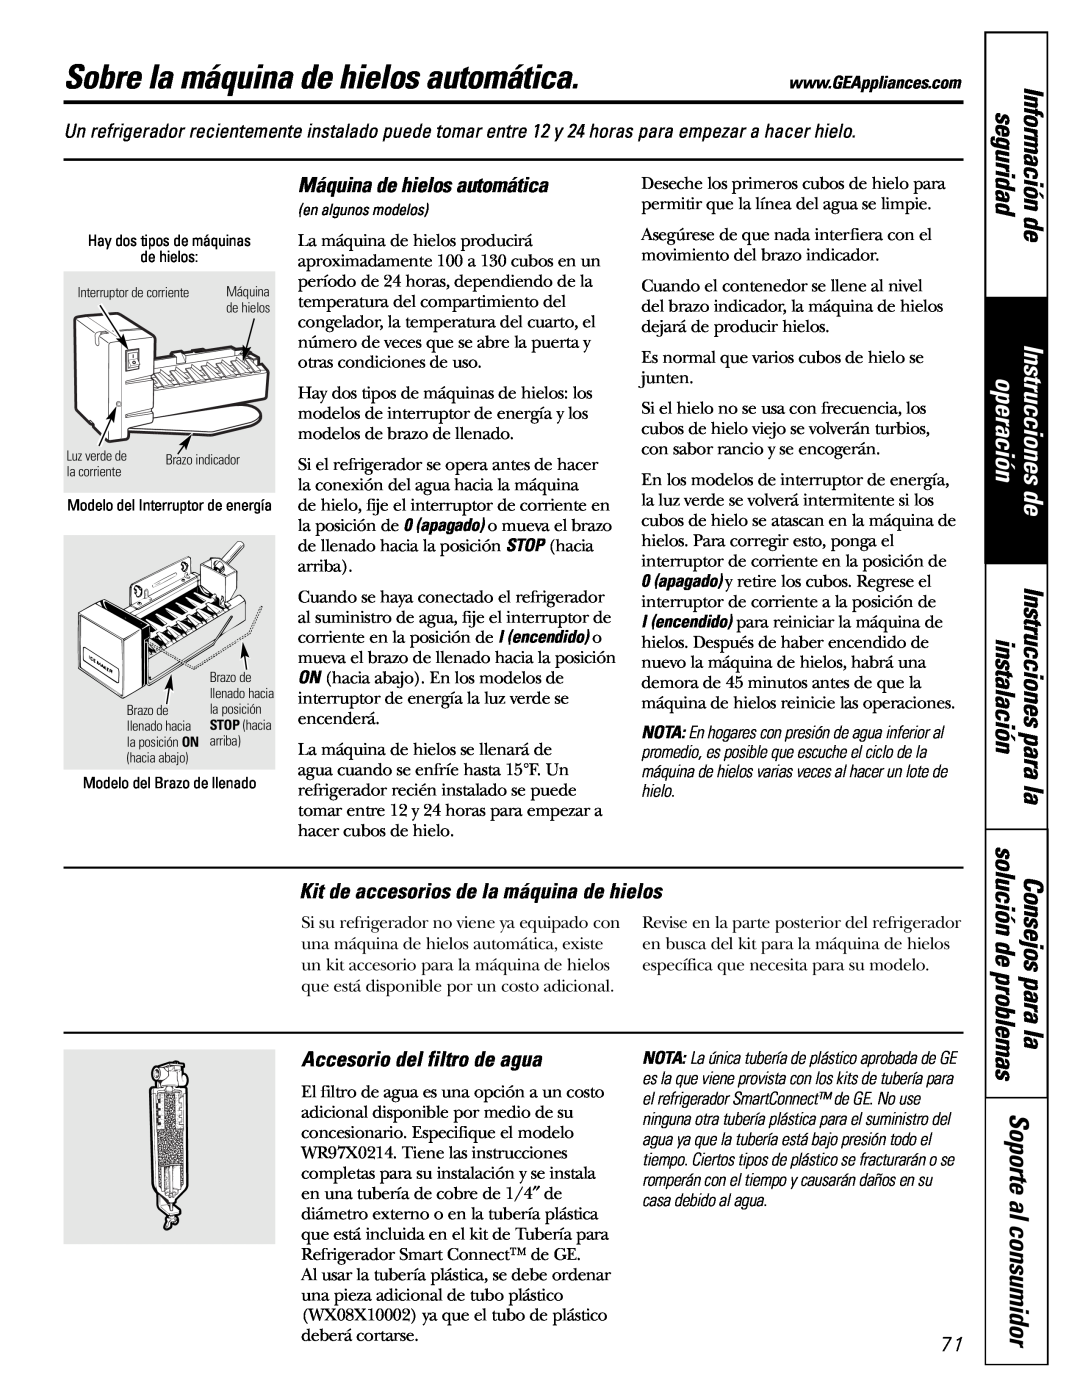 GE 197D3354P003 Sobre la máquina de hielos automática, Información, Kit de accesorios de la máquina de hielos, seguridad 